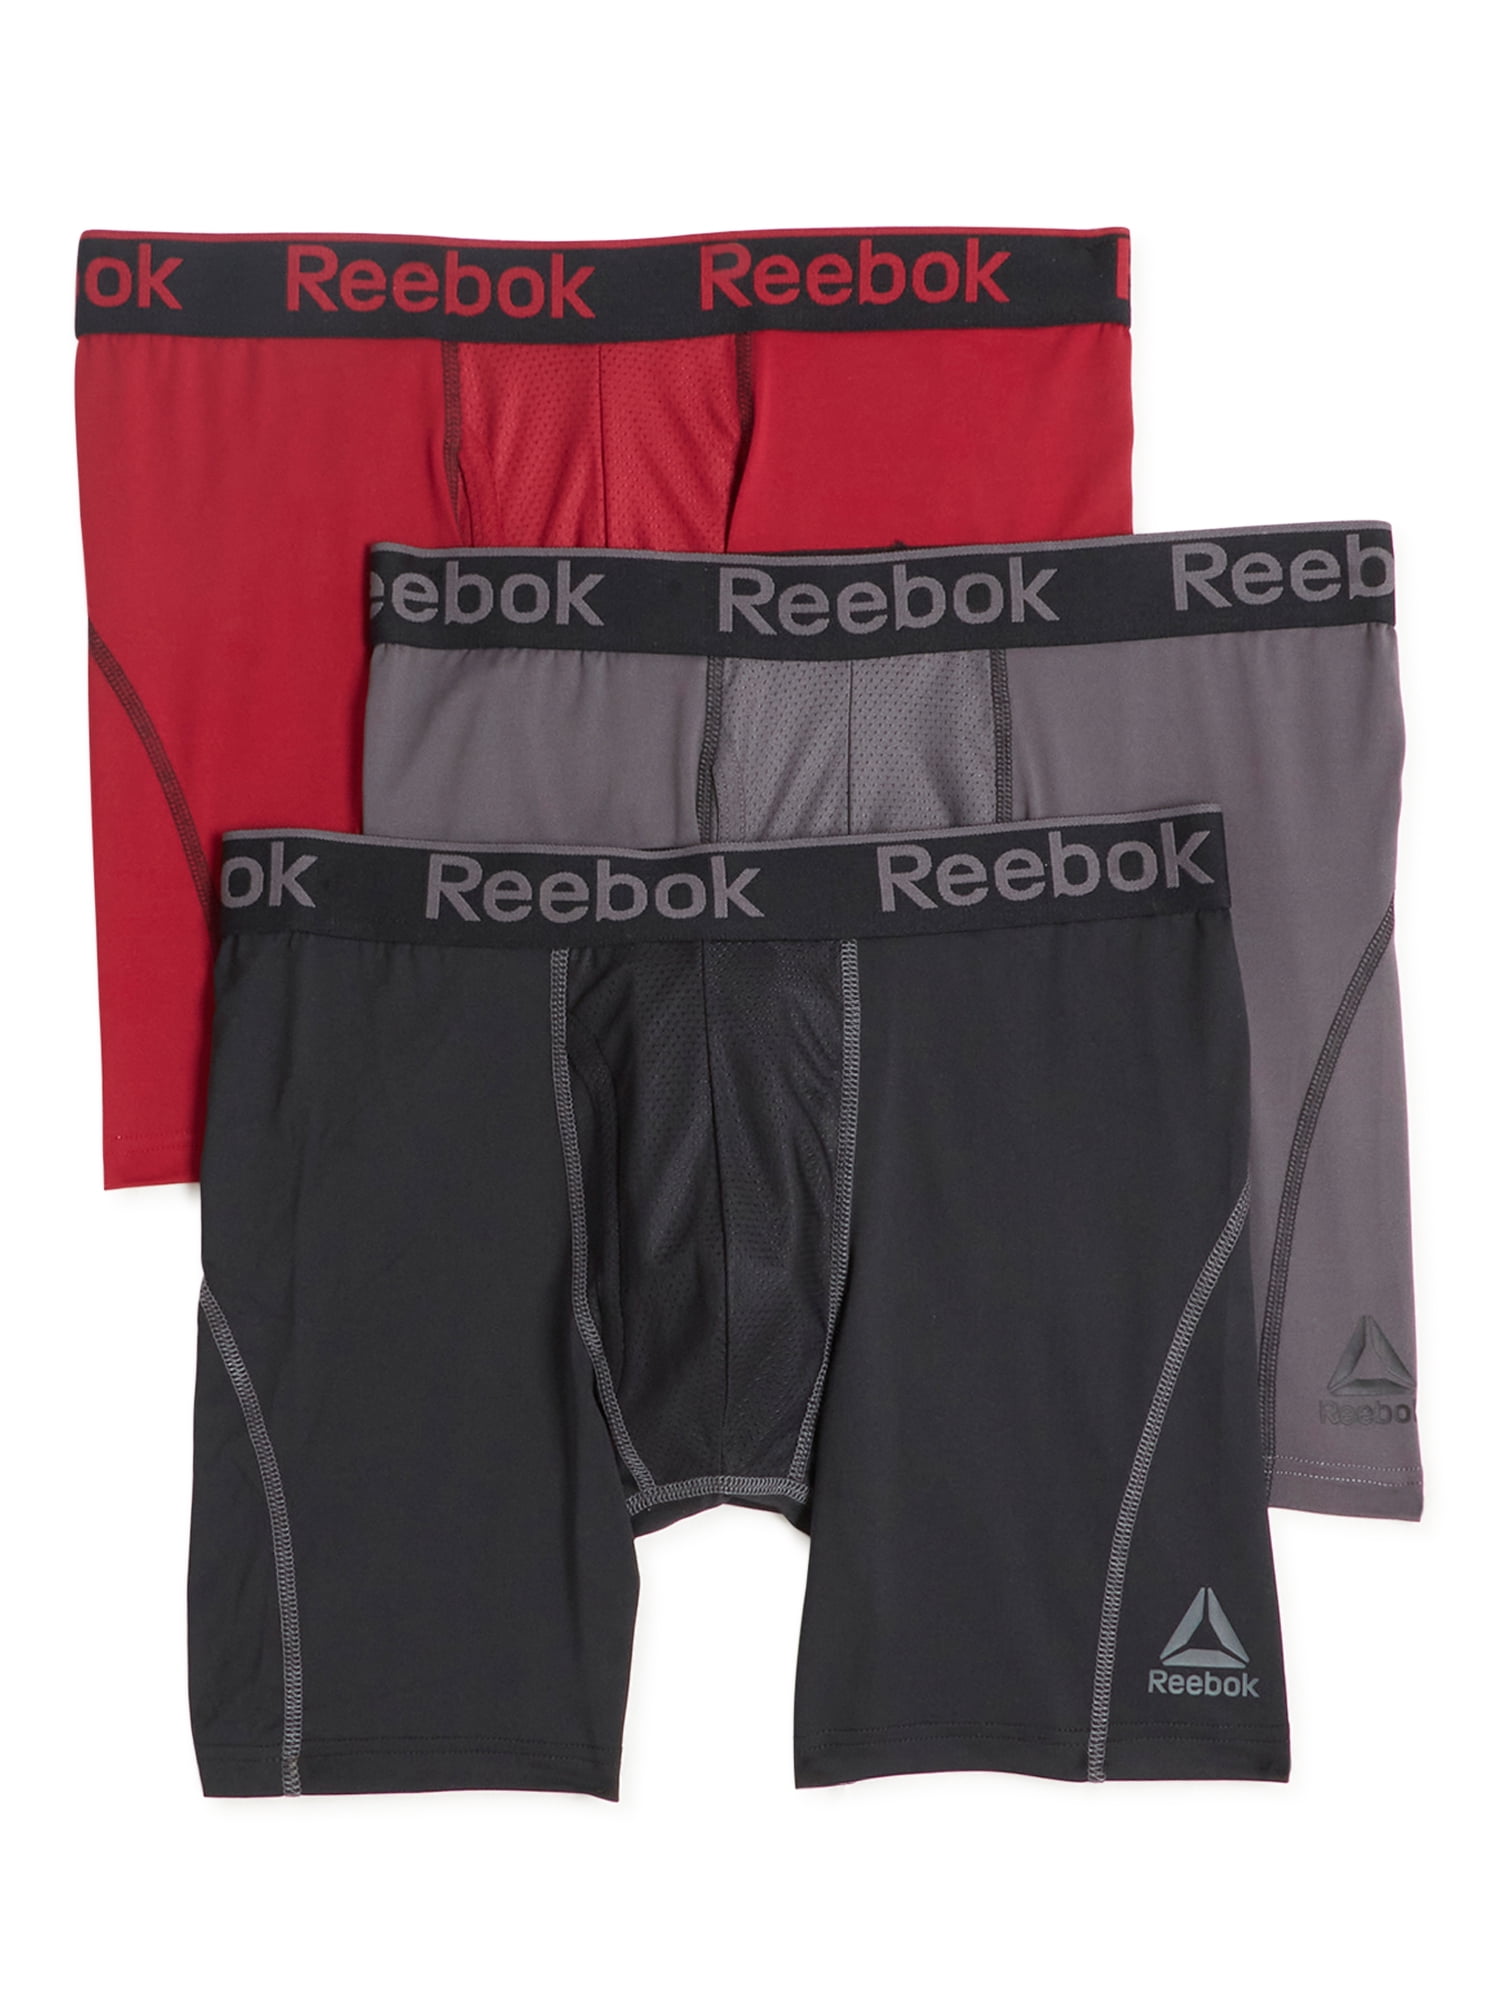 Reebok Men's Pro Series Performance Boxer Brief Underwear 6", Pack - Walmart.com